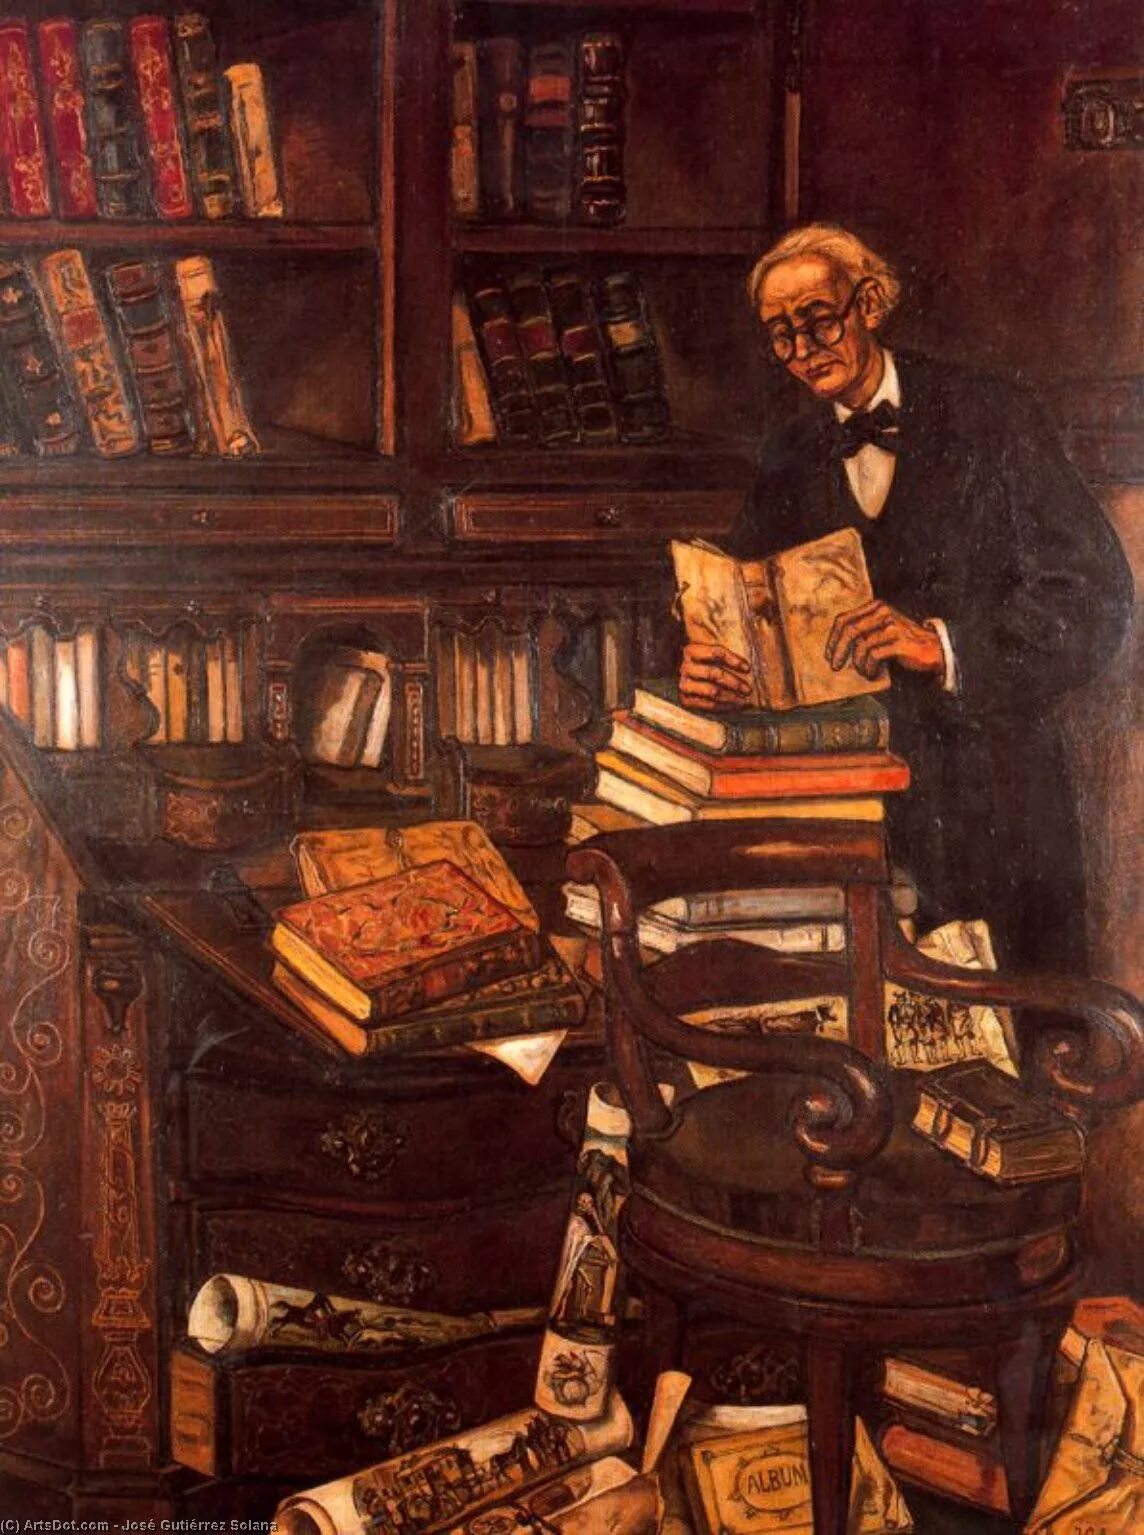 Хосе Гутьеррес Солана библиофил. Библиотека картина художника 19 век.